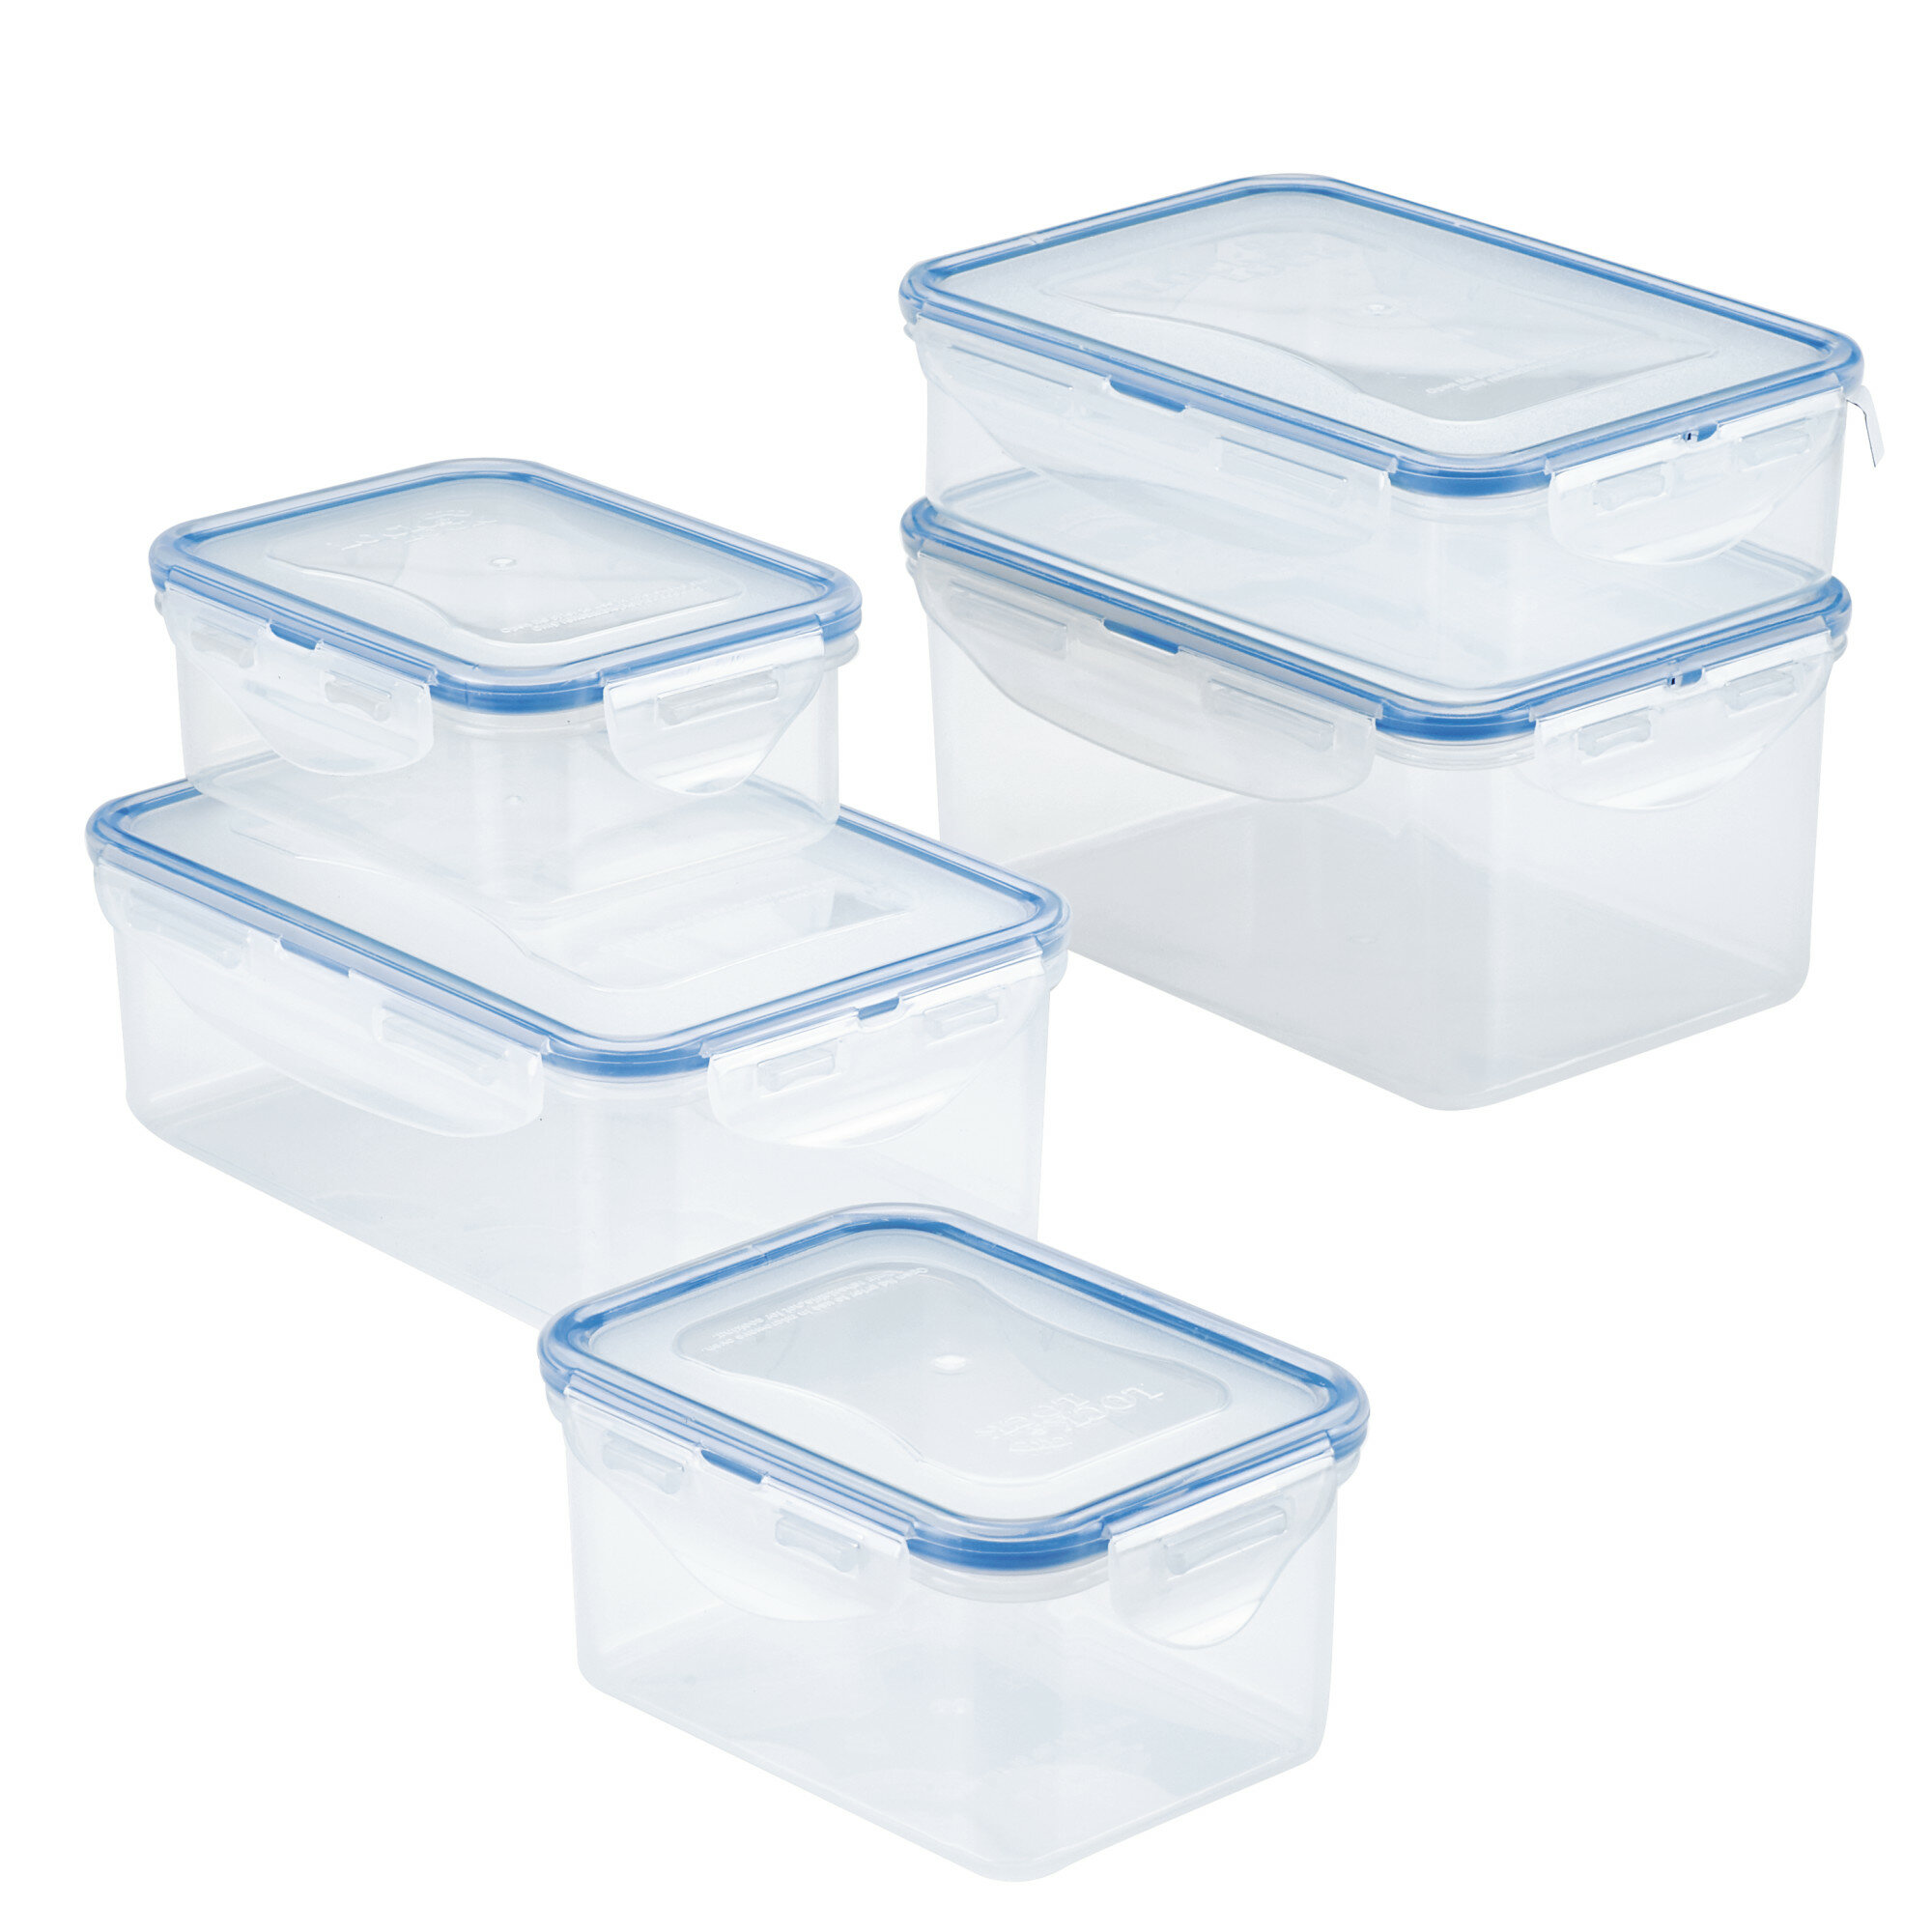 https://assets.wfcdn.com/im/54117438/compr-r85/9359/93595197/easy-essentials-rectangular-food-storage-container-set-10-piece.jpg